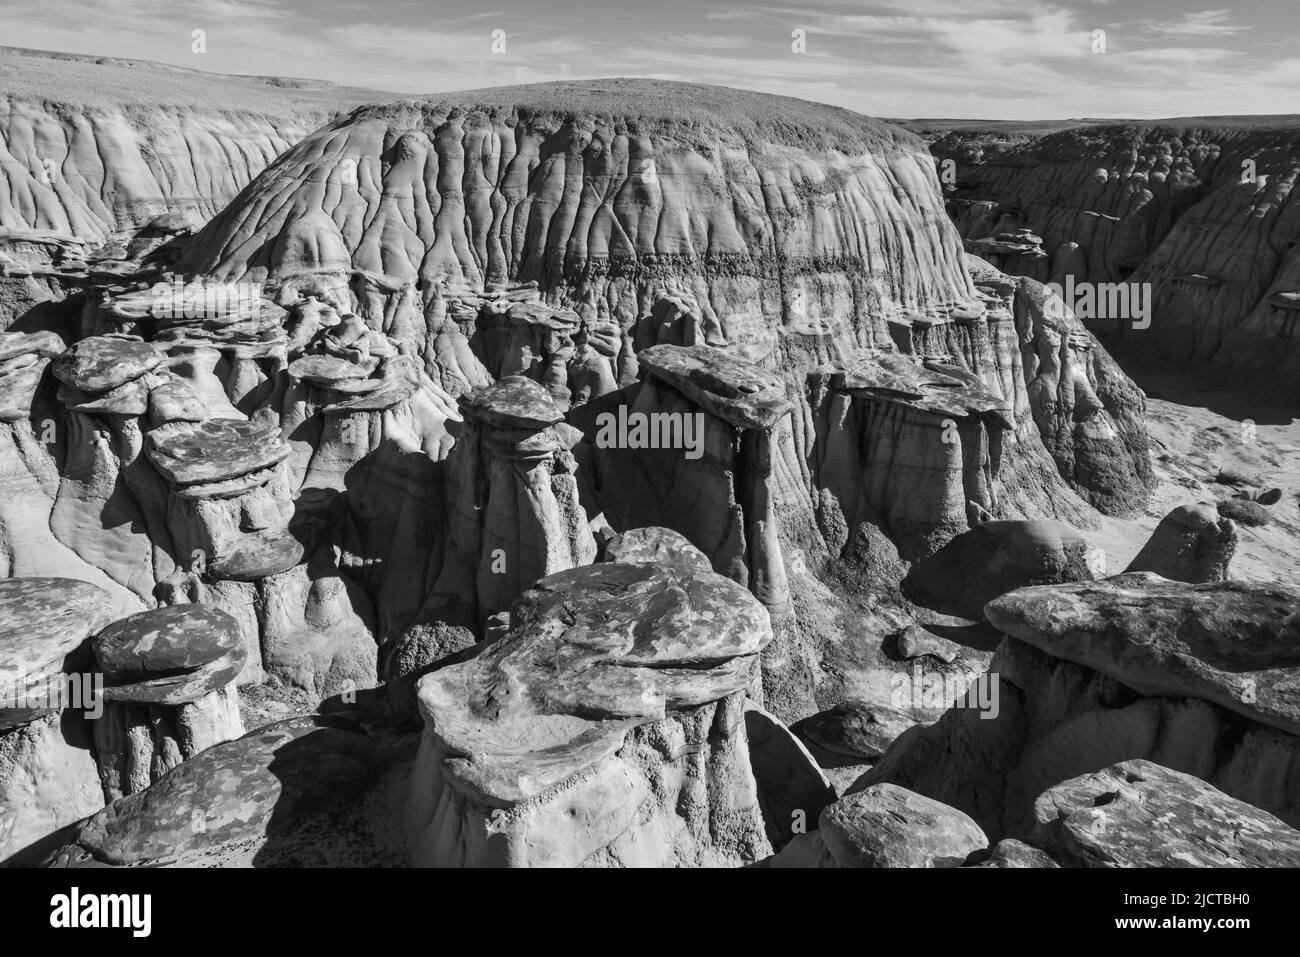 Extrañas formaciones de arenisca creadas por la erosión en el área de estudio de la naturaleza Ah-Shi-SLE-PAH en el condado de San Juan, cerca de la ciudad de Farmington, Nuevo México. Foto de stock